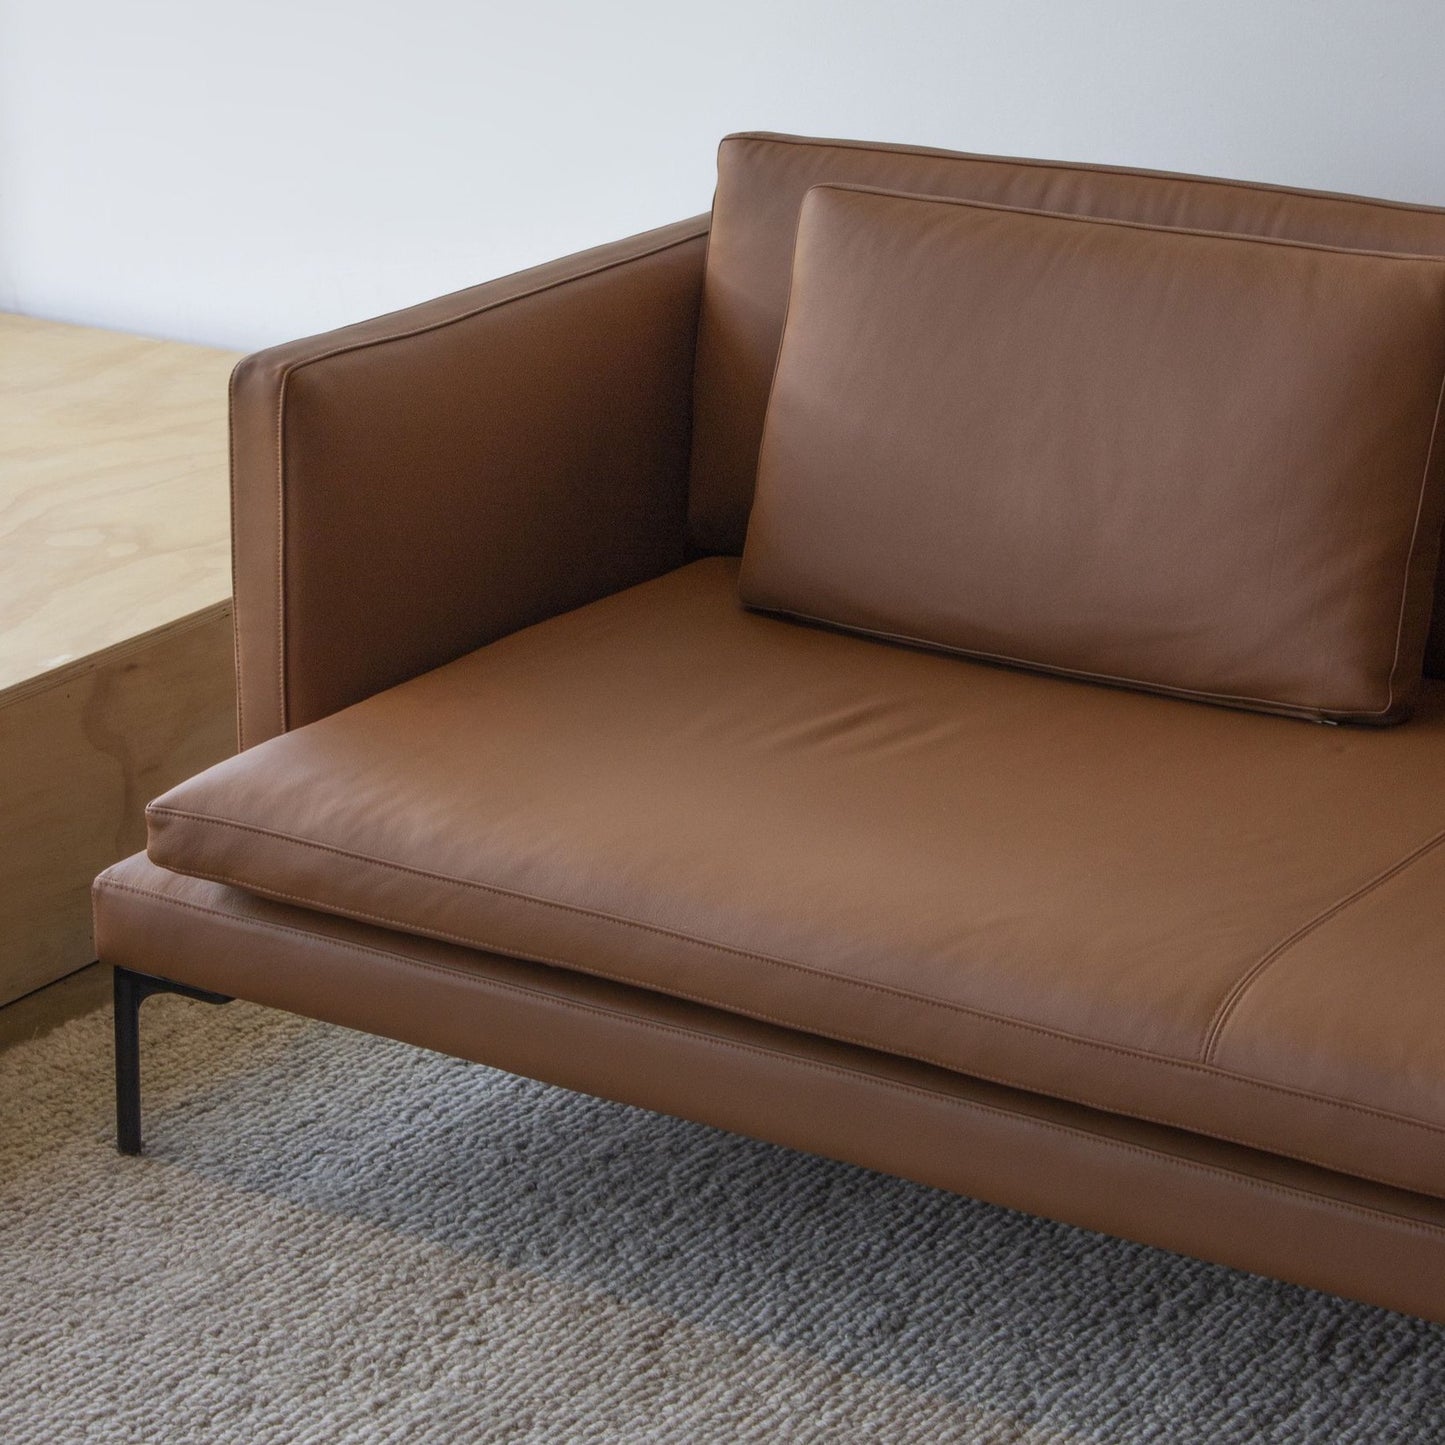 Den Modular Sofa